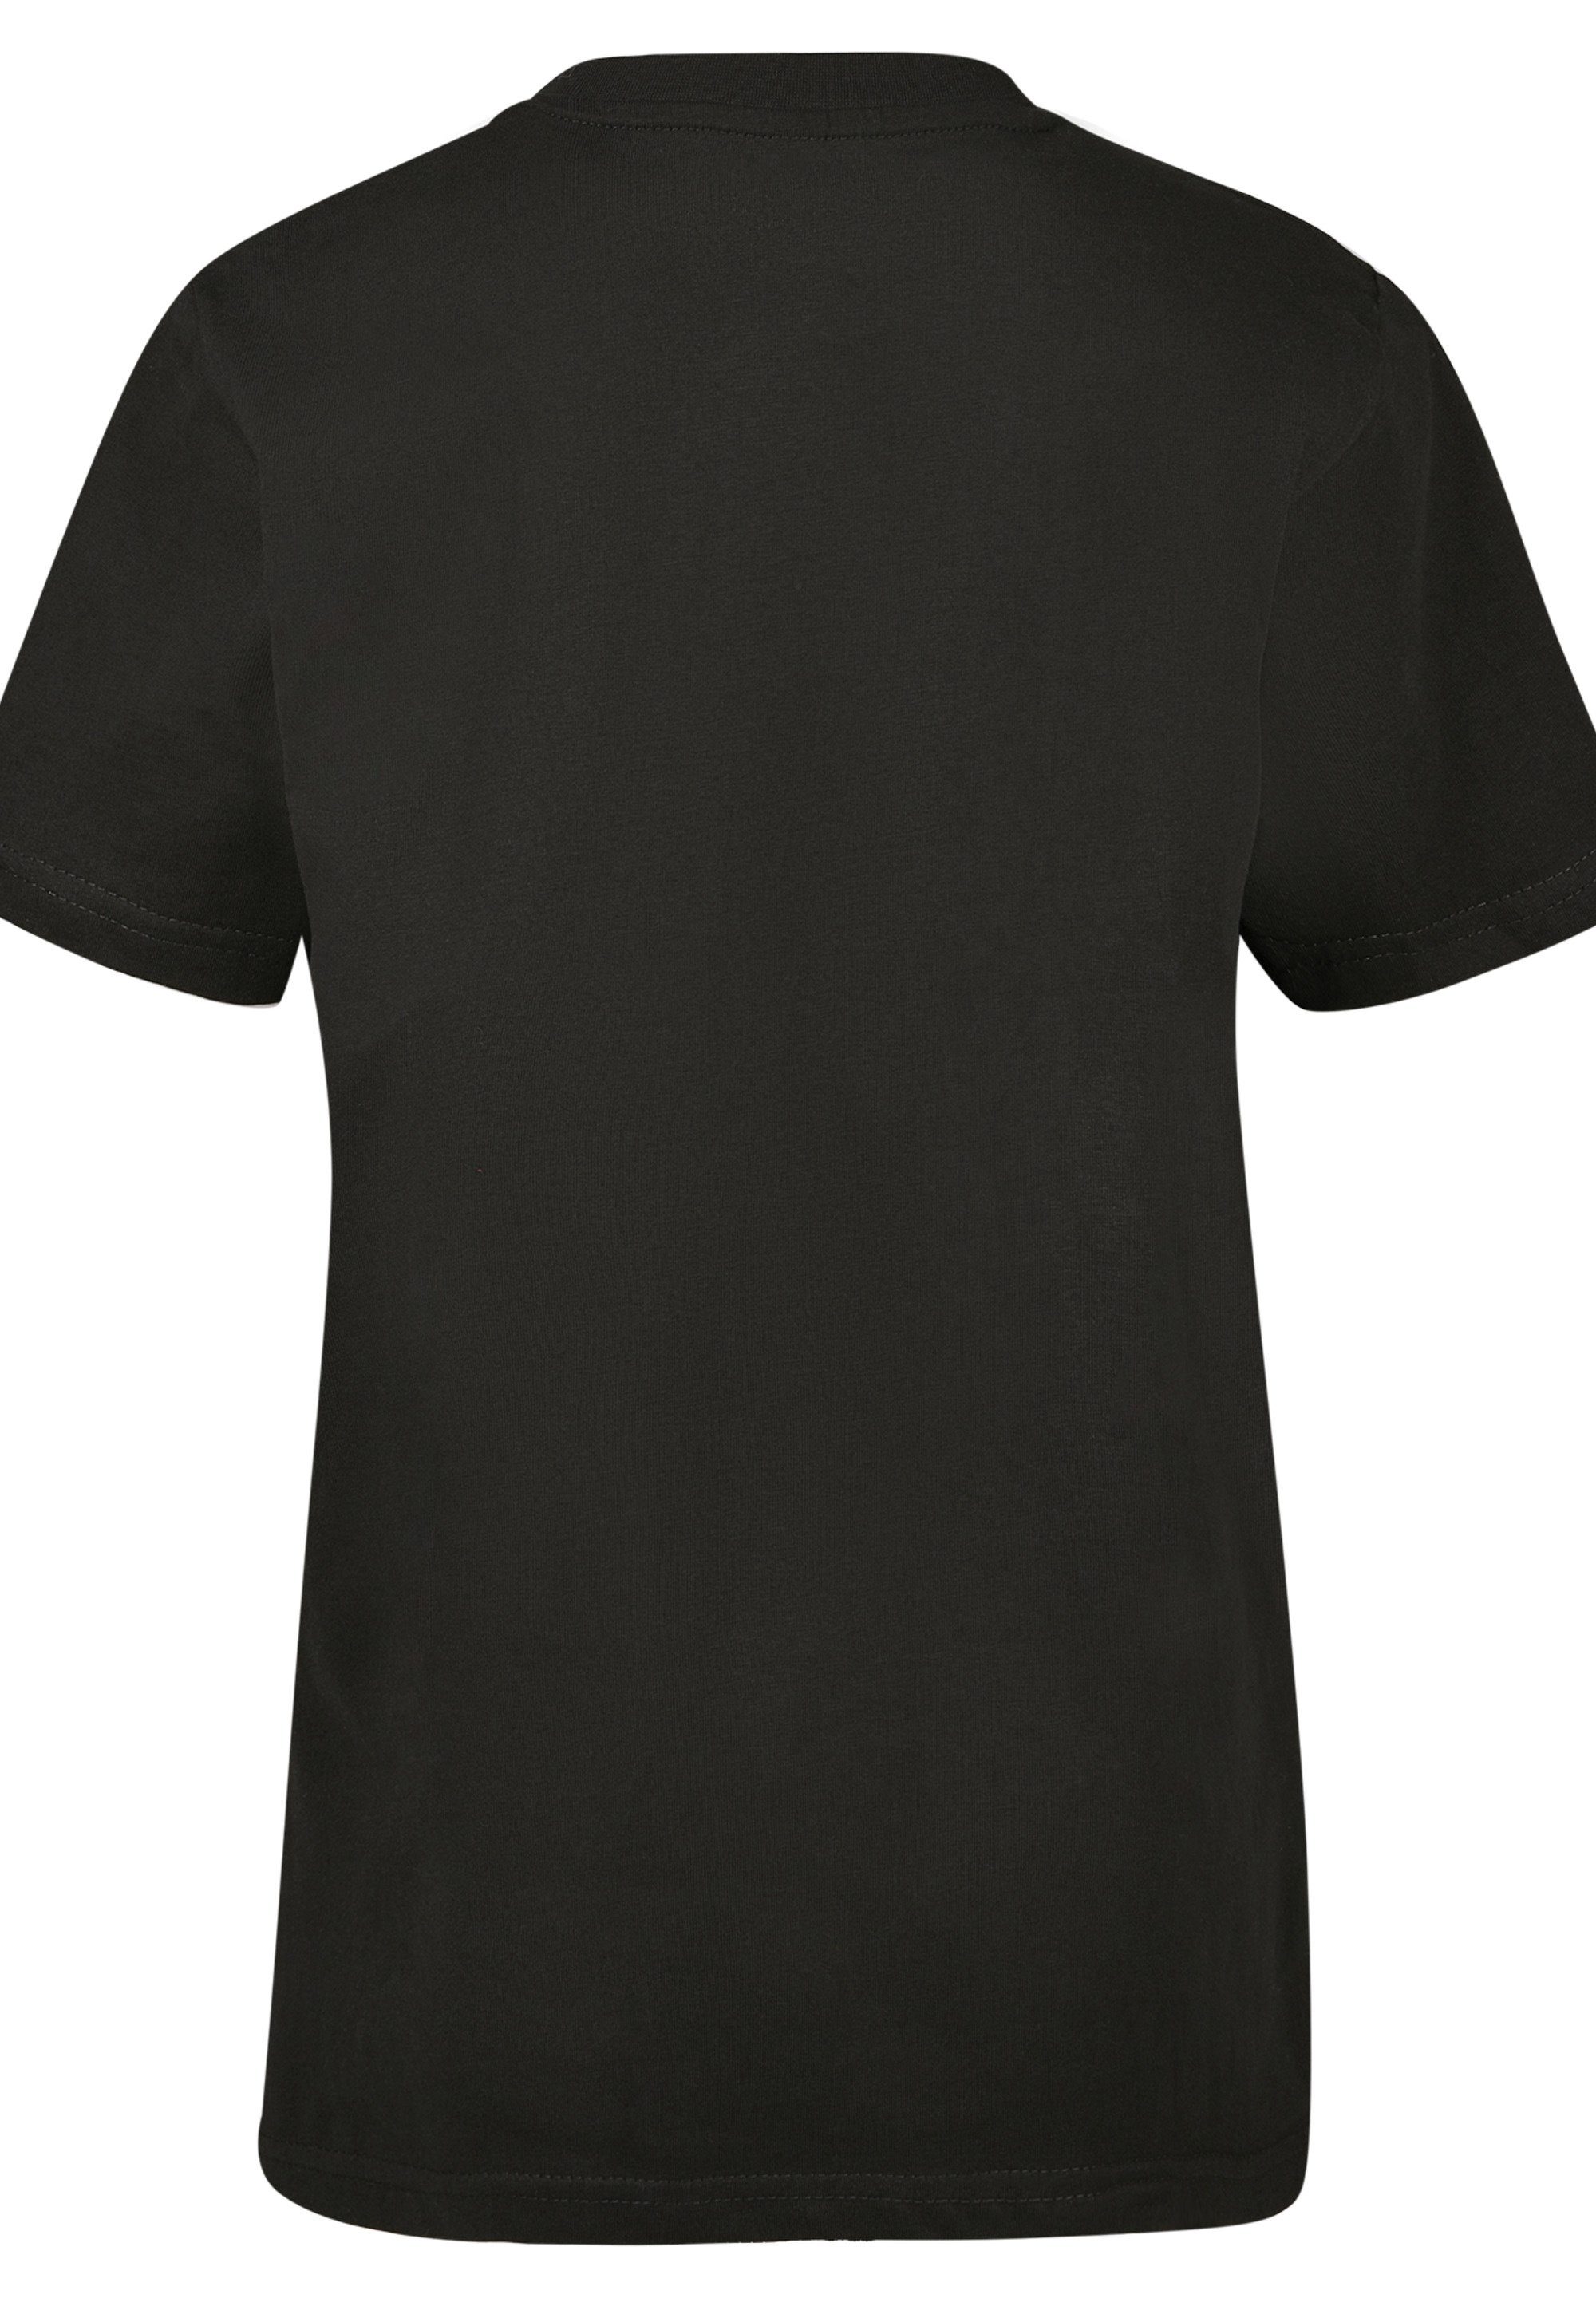 F4NT4STIC T-Shirt Star Wars Stormtrooper Kinder,Premium Unisex Merch,Jungen,Mädchen,Bedruckt schwarz